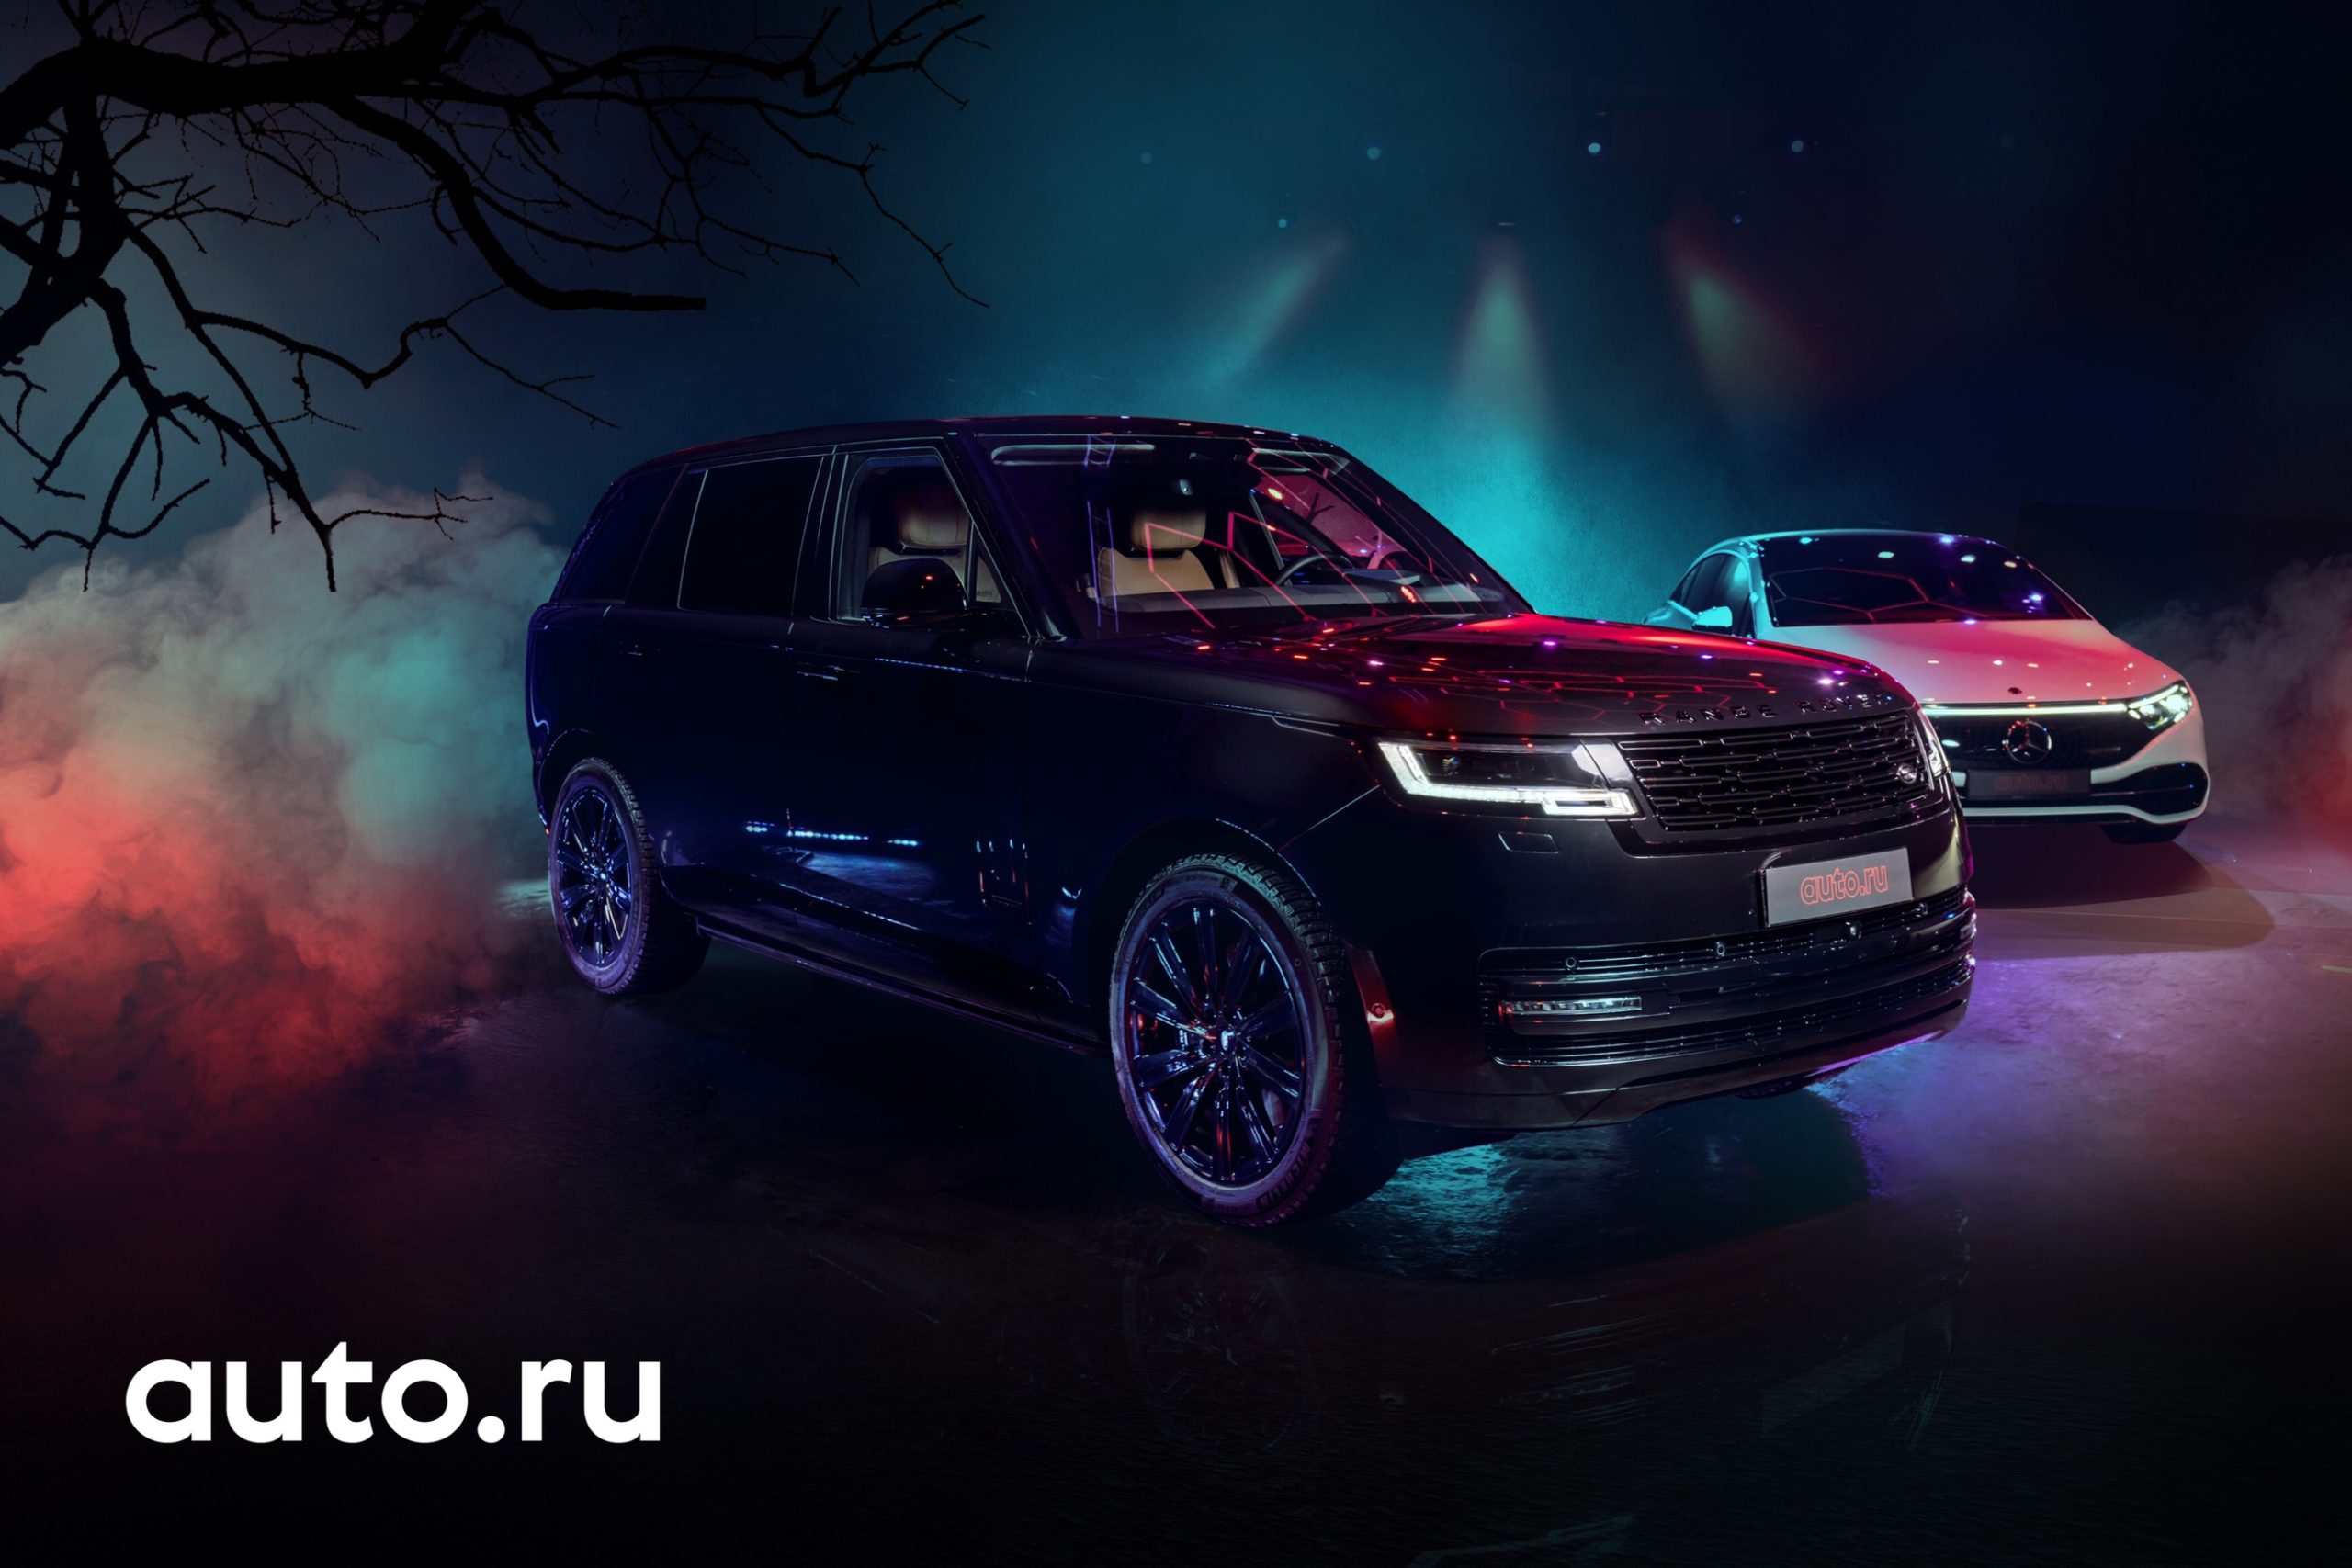 «Параллельной новинкой» 2022 года по версии голосования на Авто.ру стал новый Range Rover